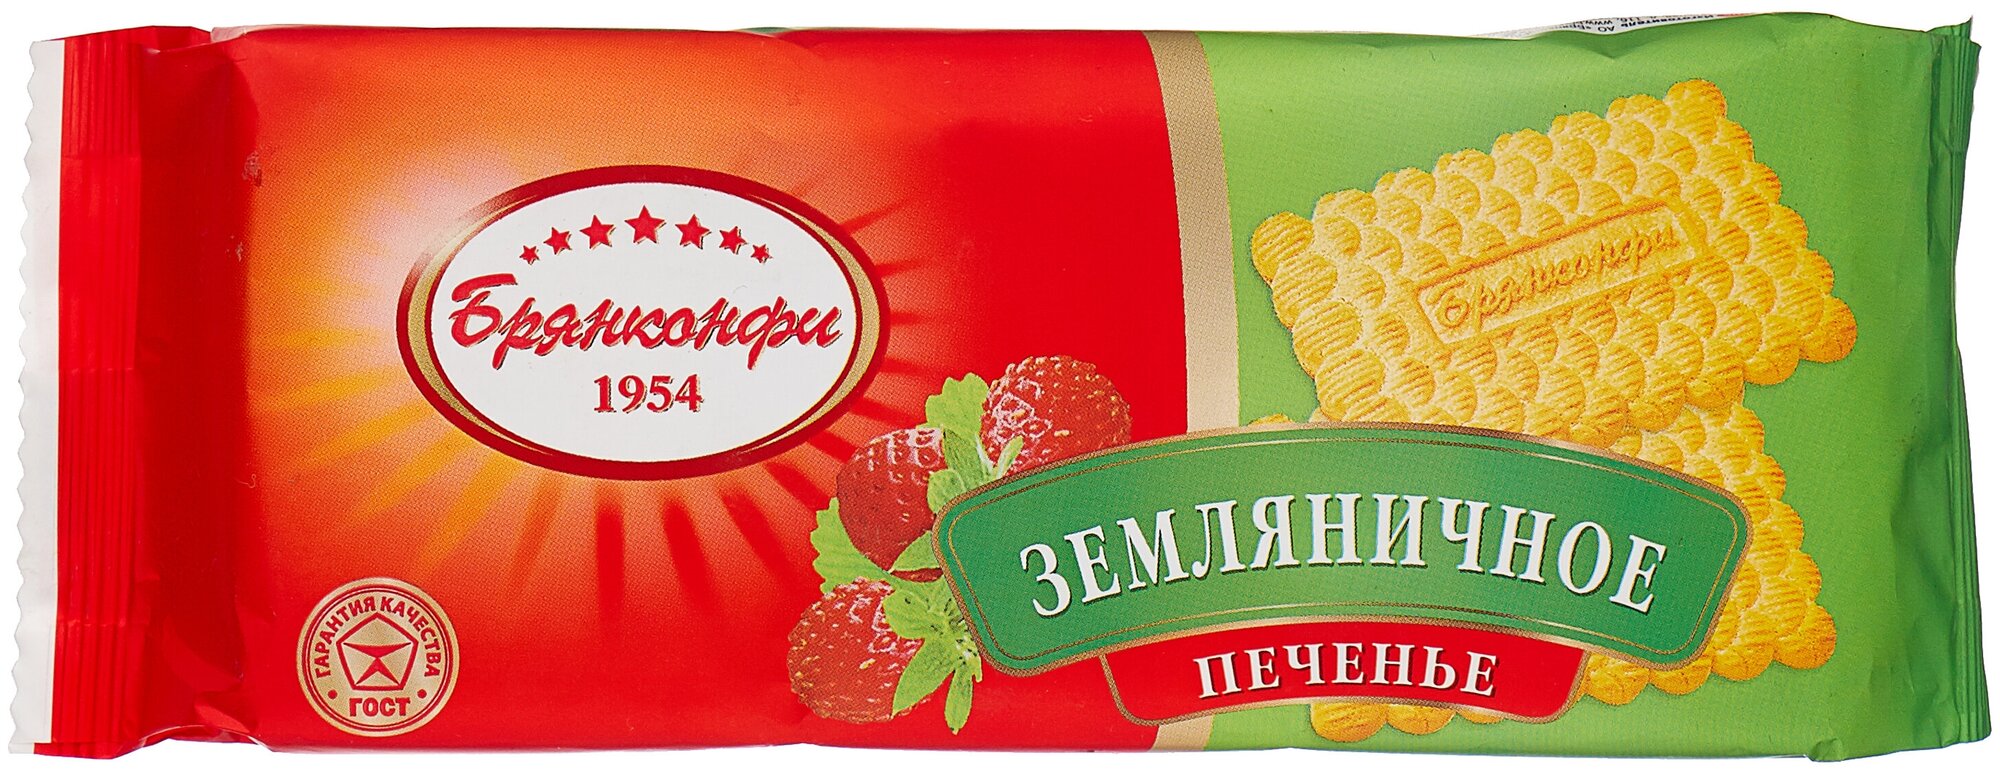 Печенье Брянконфи Земляничное 190 г